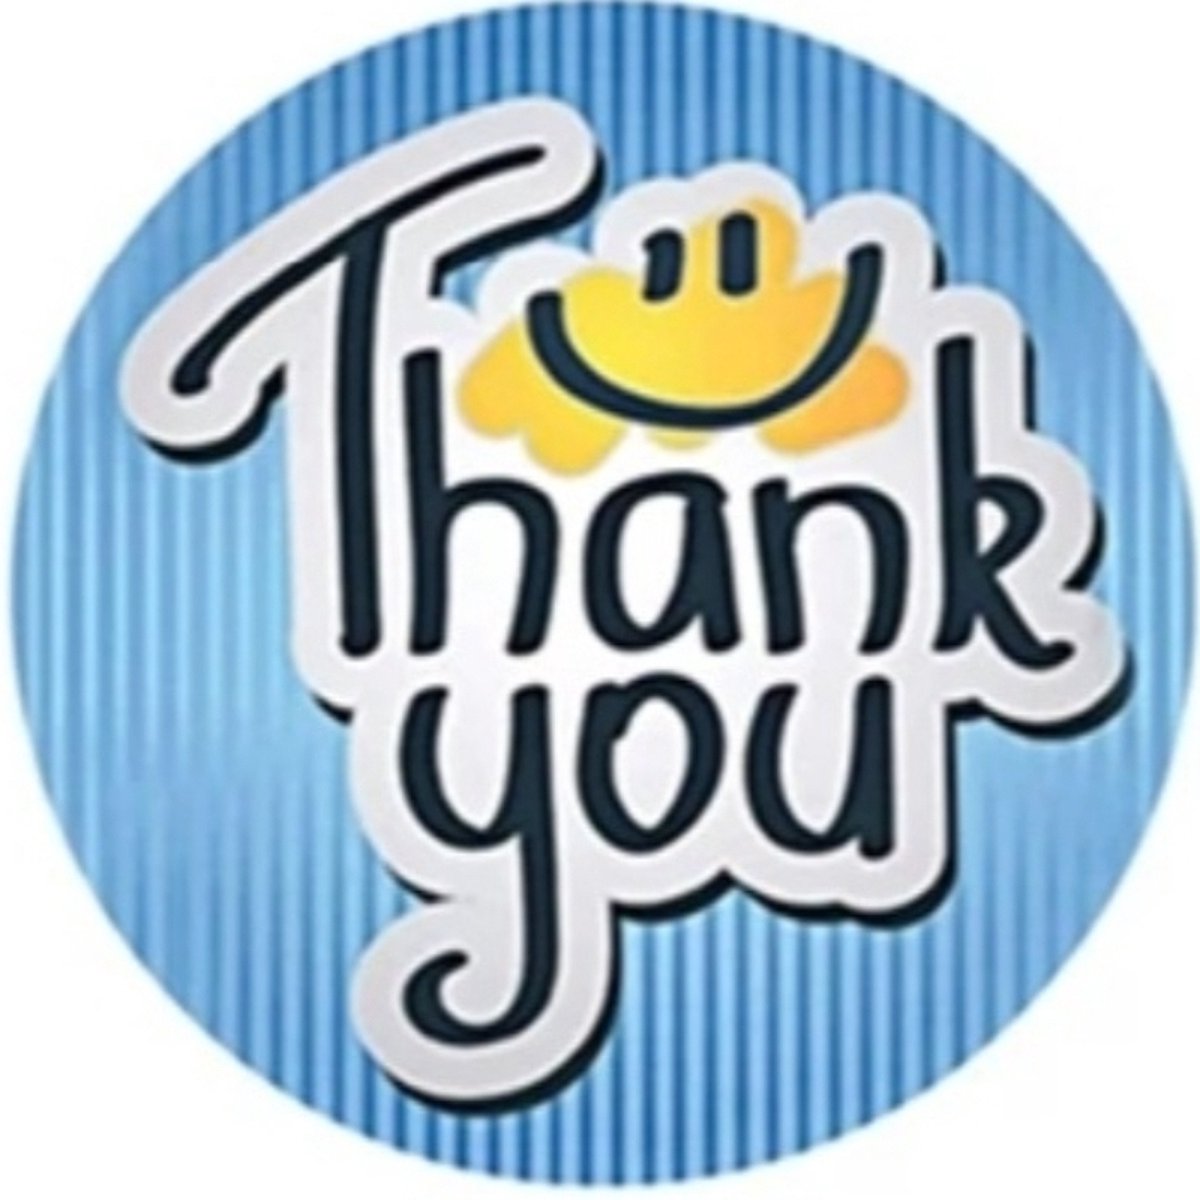 Stickers ▪︎ Multiplaza ▪︎ "THANK YOU" ▪︎ 50 stuks ▪︎ Etiketten ▪︎ smiley ▪︎ bedankt ▪︎ promoten bedrijf ▪︎ flowers ▪︎ hobby ▪︎ bedrijf ▪︎ webshop ▪︎ bestellingen ▪︎ brief ▪︎ pakket ▪︎ opvallen